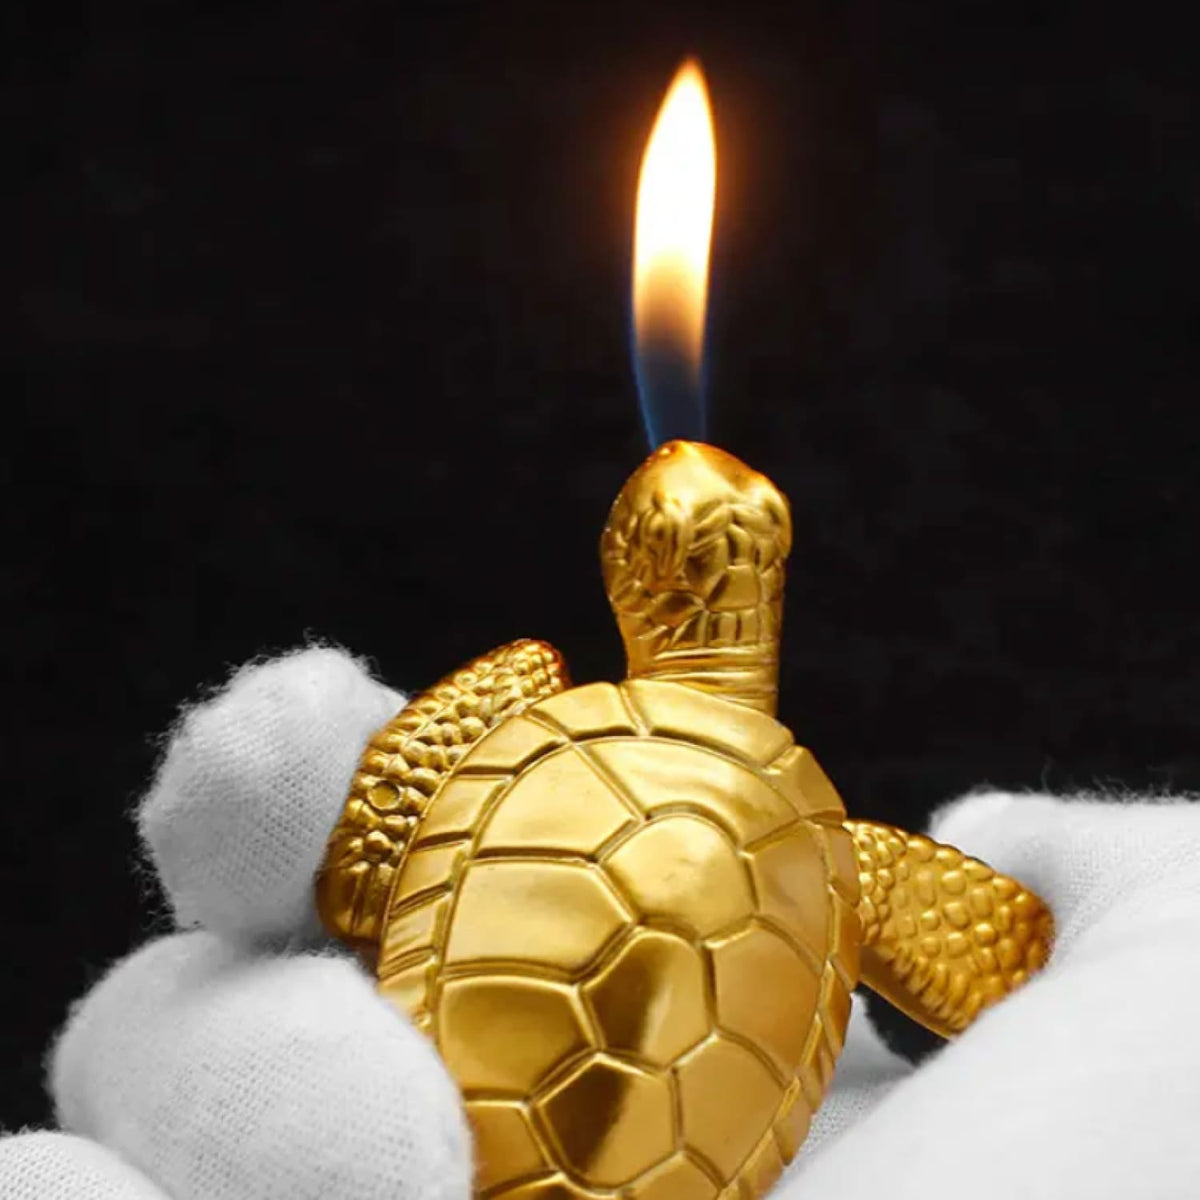 Gold Turtle Novelty Lighter Aesthetic Lighter - Animal